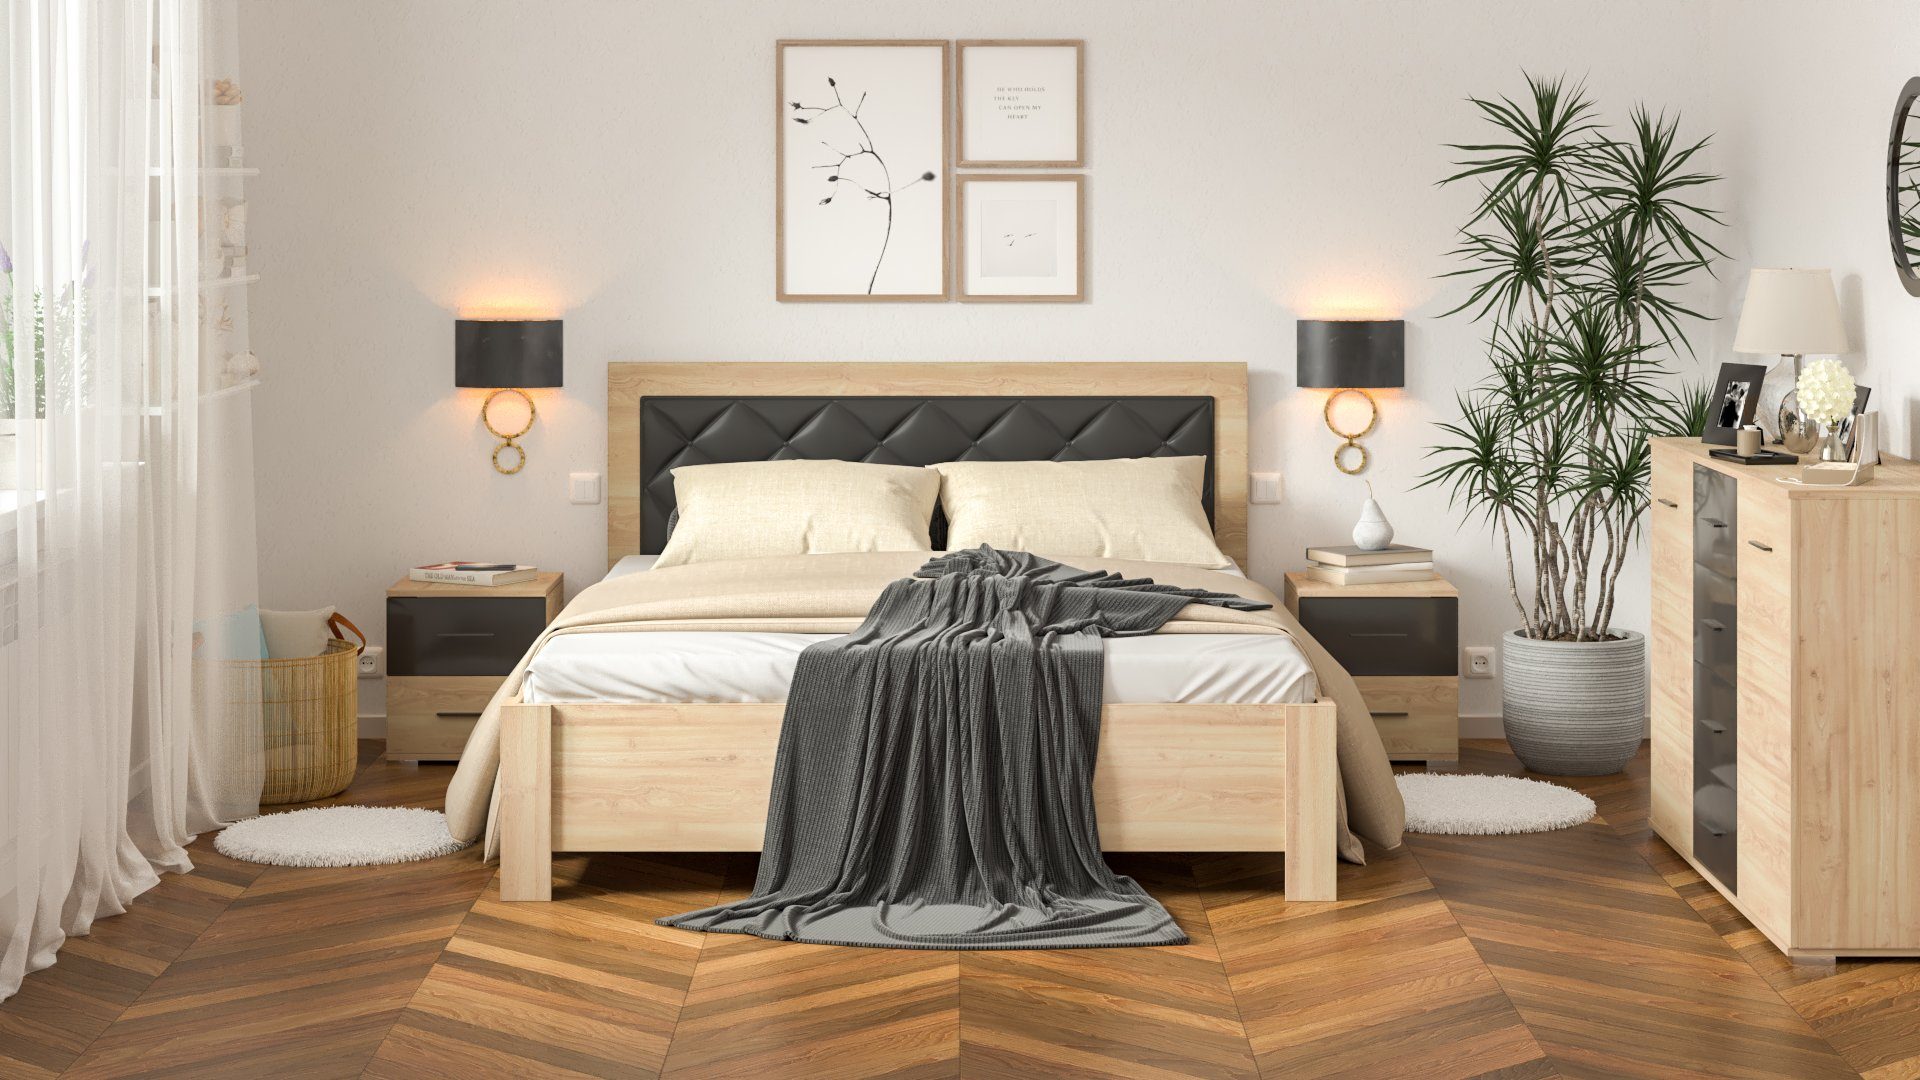 Siblo Bett Doppelbett Paris 160x200 cm mit gepolstertem Kopfteil - elegantes Bett - Doppelbetten - laminierte Platte - Holzrahmen, Möbelplatte